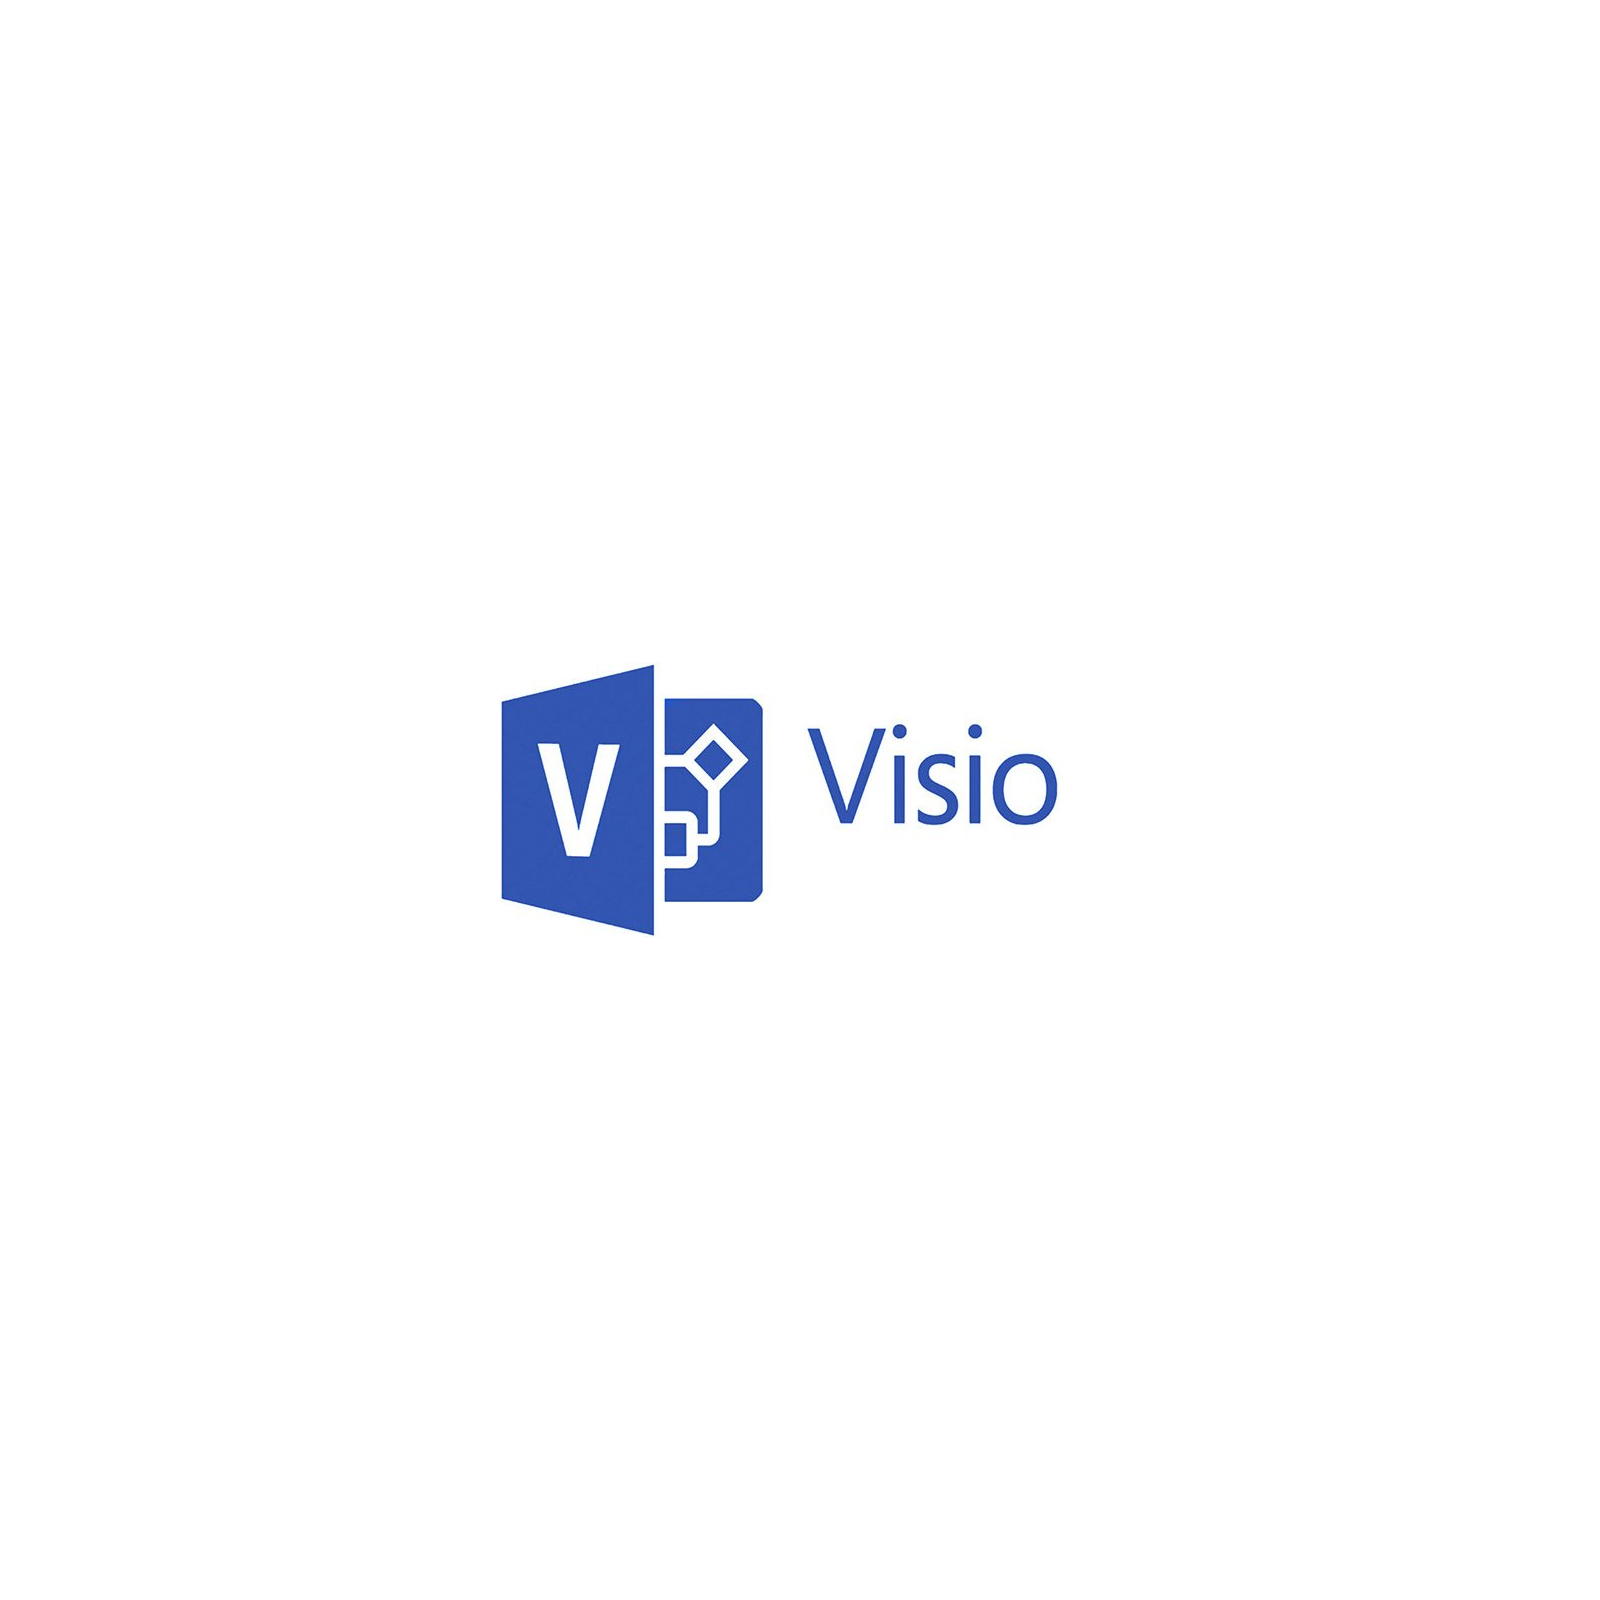 Програмна продукція Microsoft VisioStd 2016 SNGL OLP NL Acdmc (D86-05695)